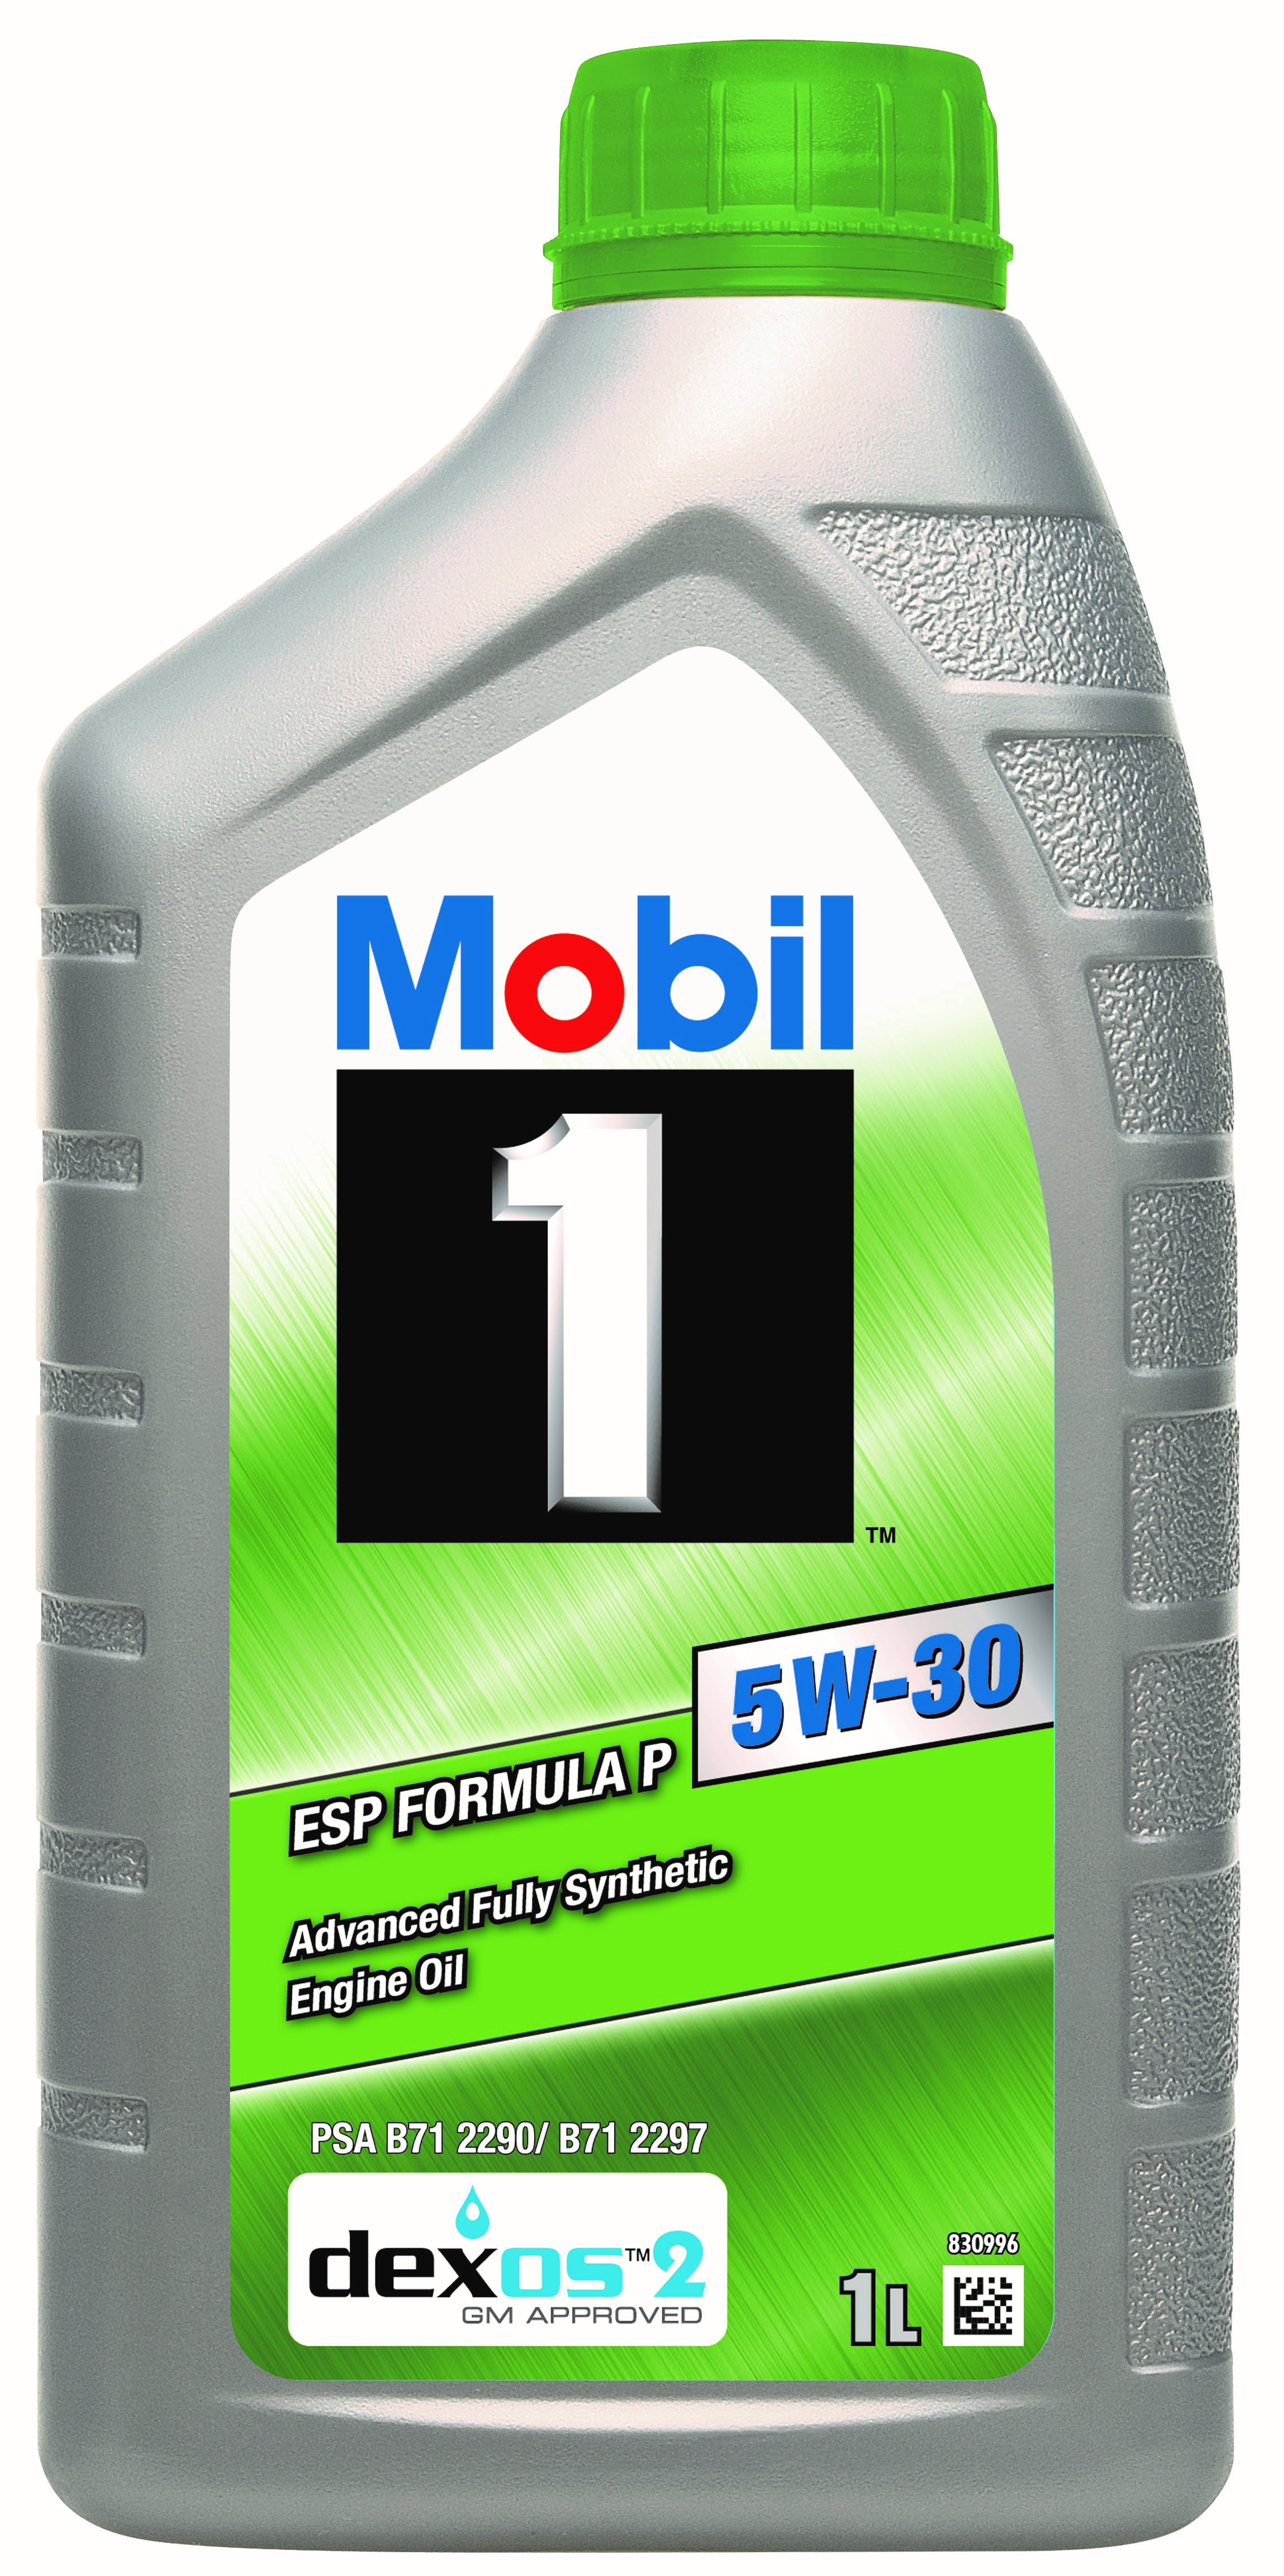 MOBIL 1 ESP Formula P 5W-30 1 L